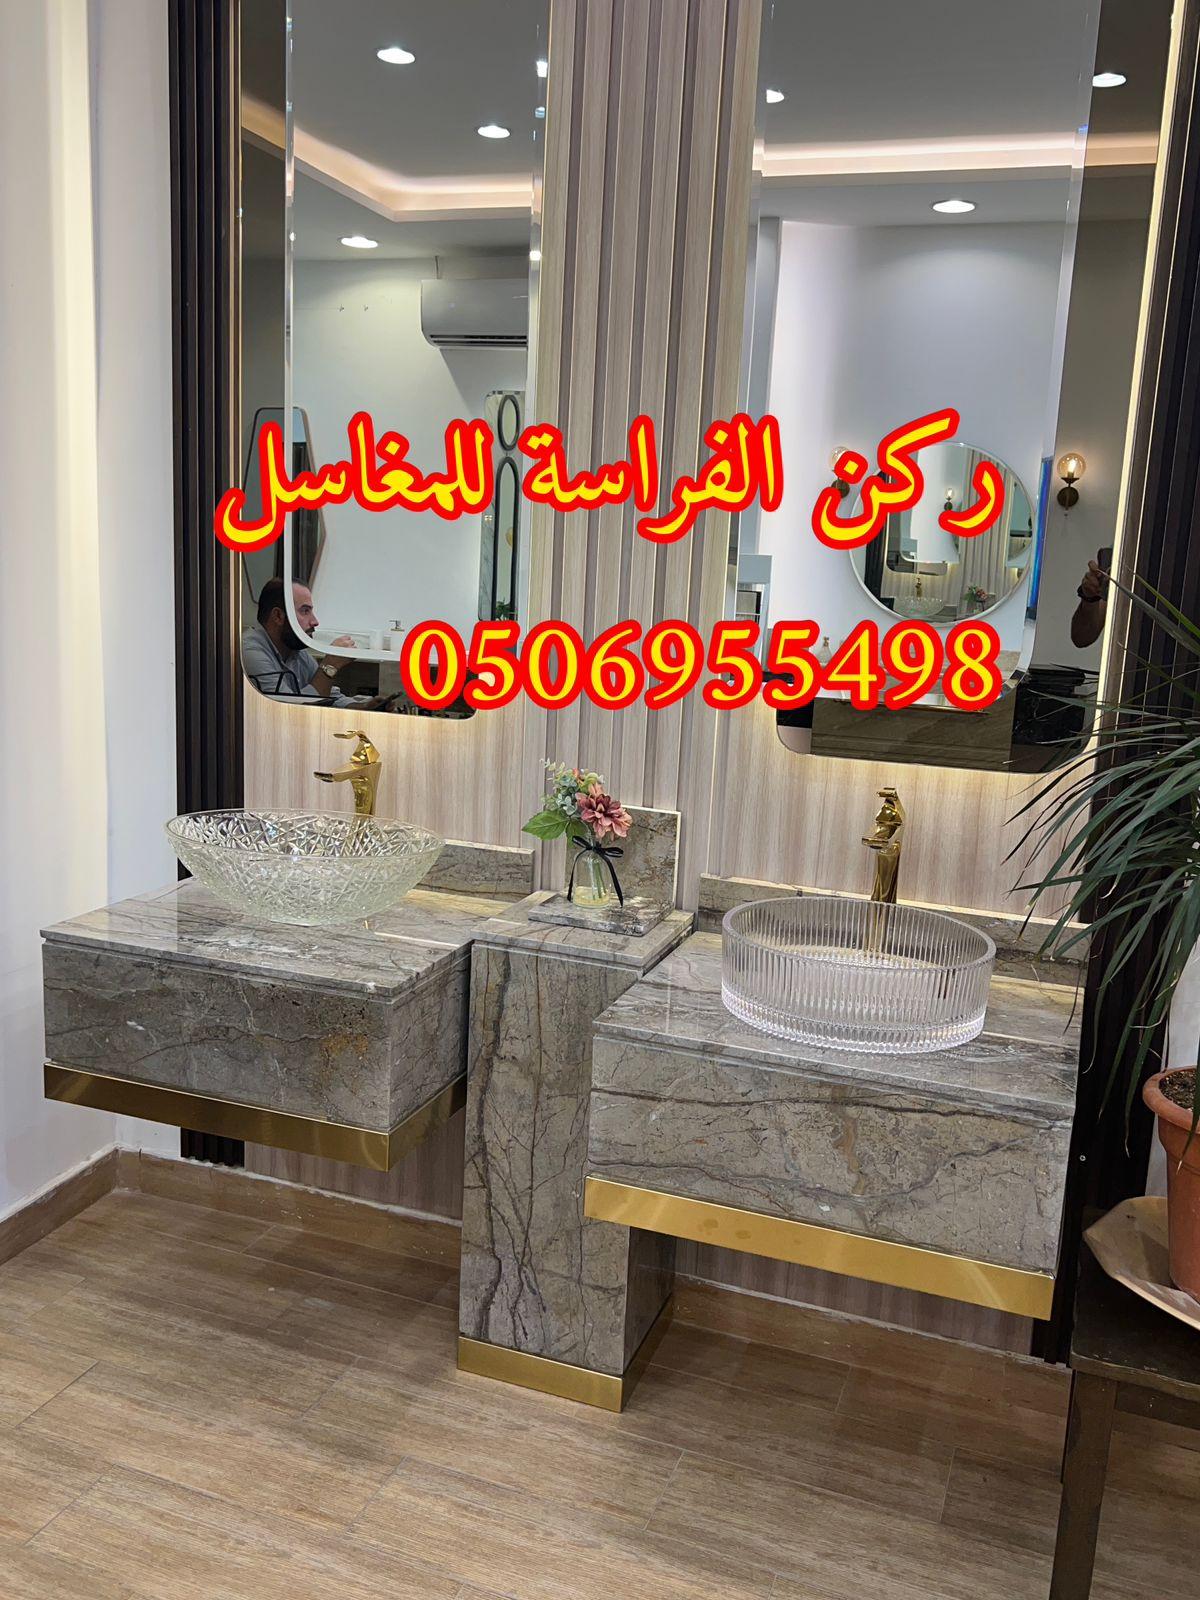 تفصيل ديكورات مغاسل حمامات رخام في الرياض,0506955498 425460629